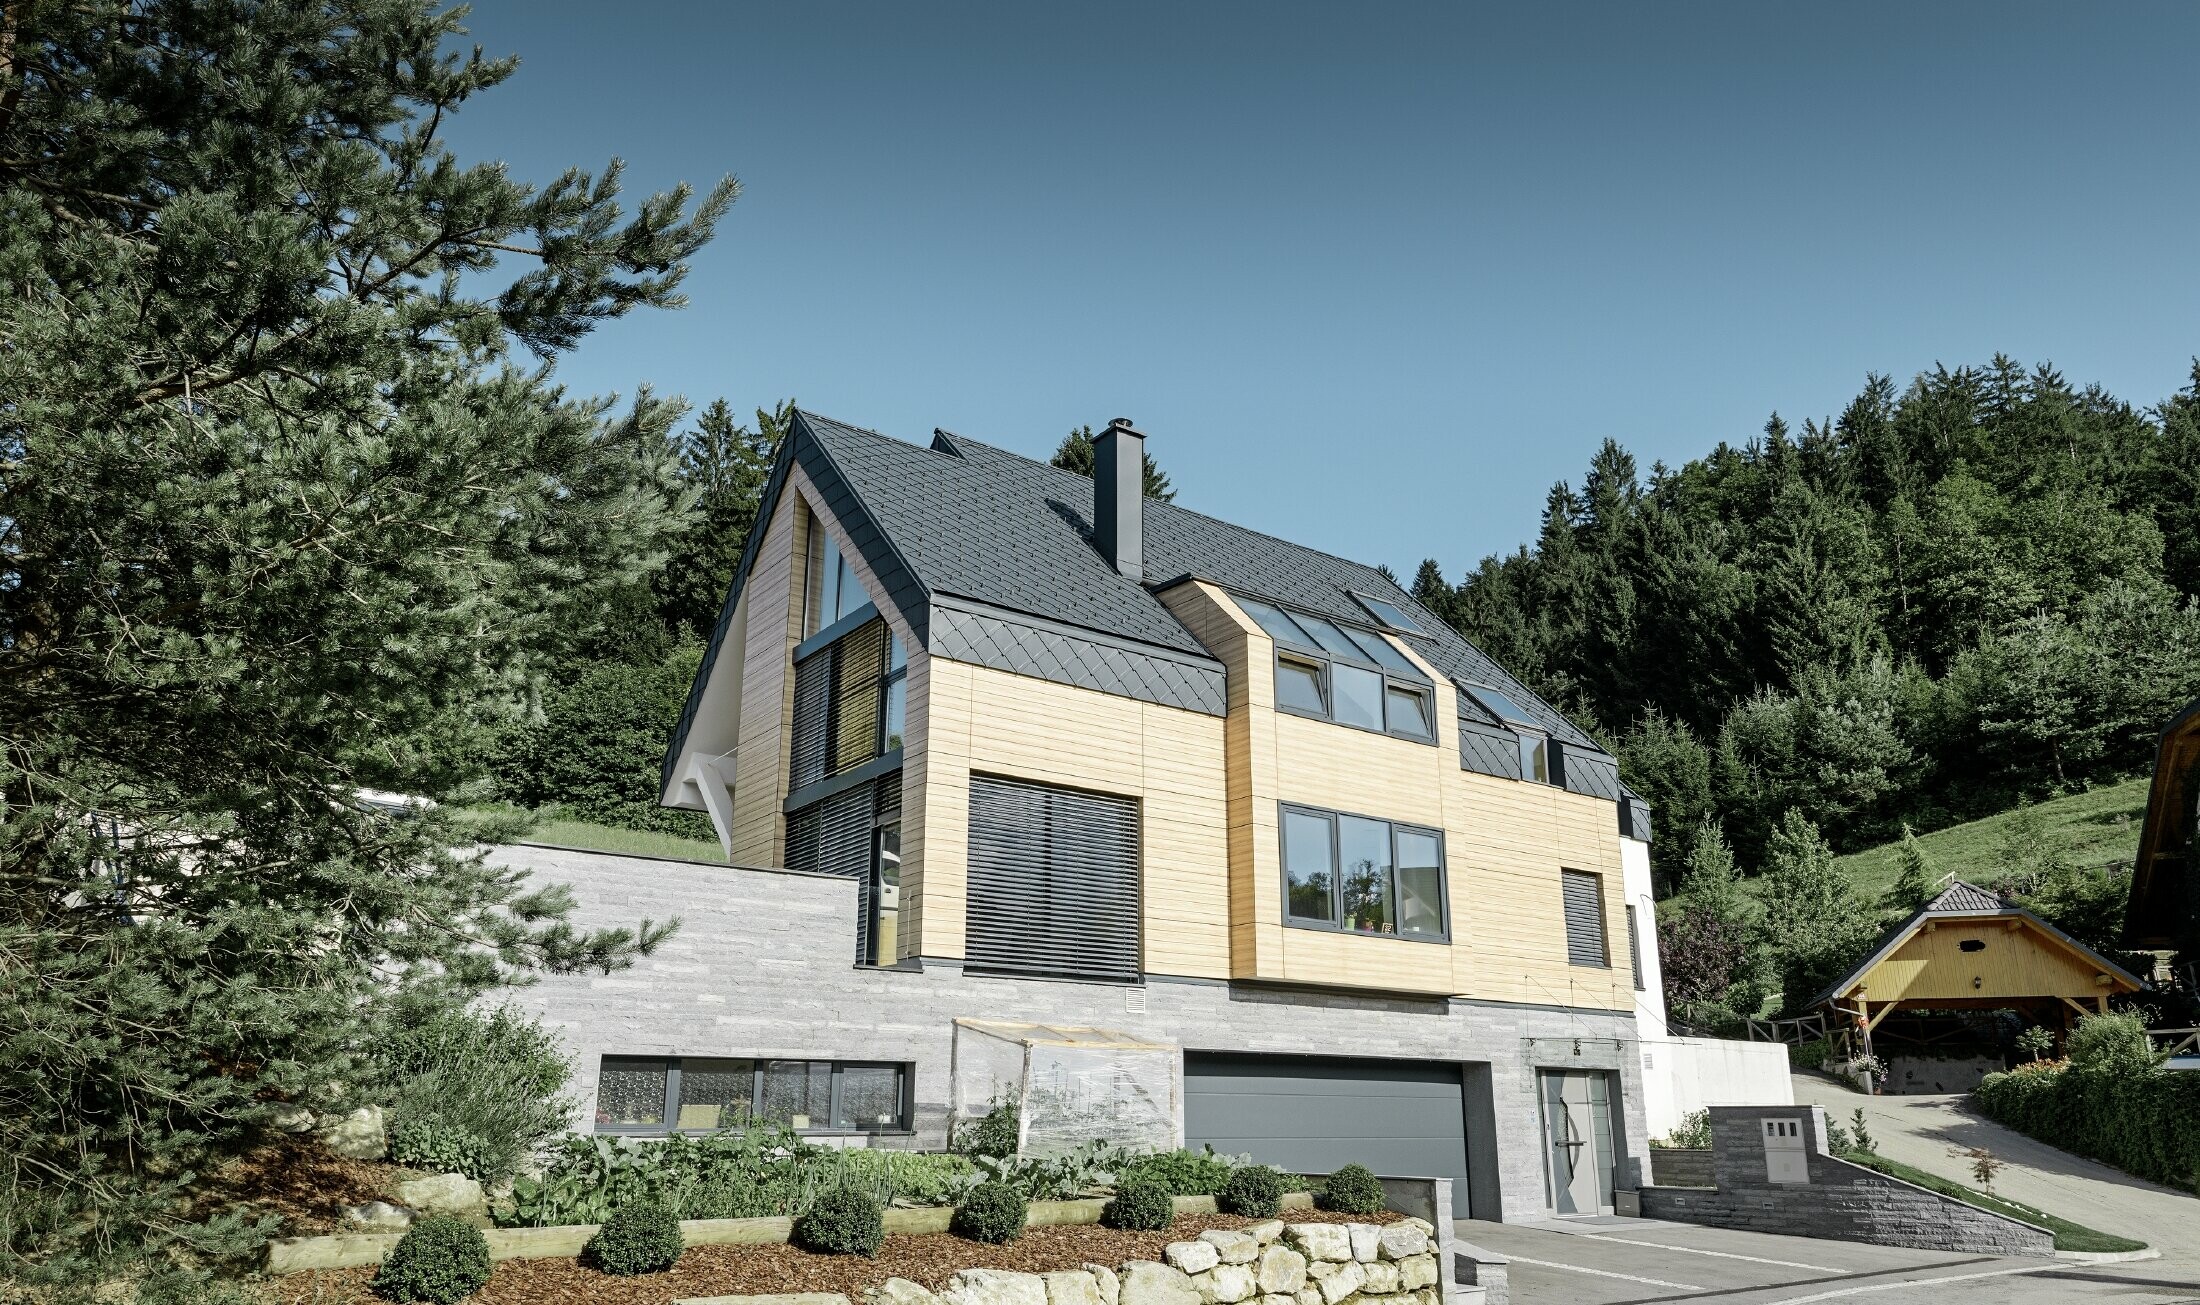 Obiteljska kuća s dvostrešnim krovom bez krovnih istaka s fasadom u imitaciji drveta i aluminijskim krovom u antracit boji